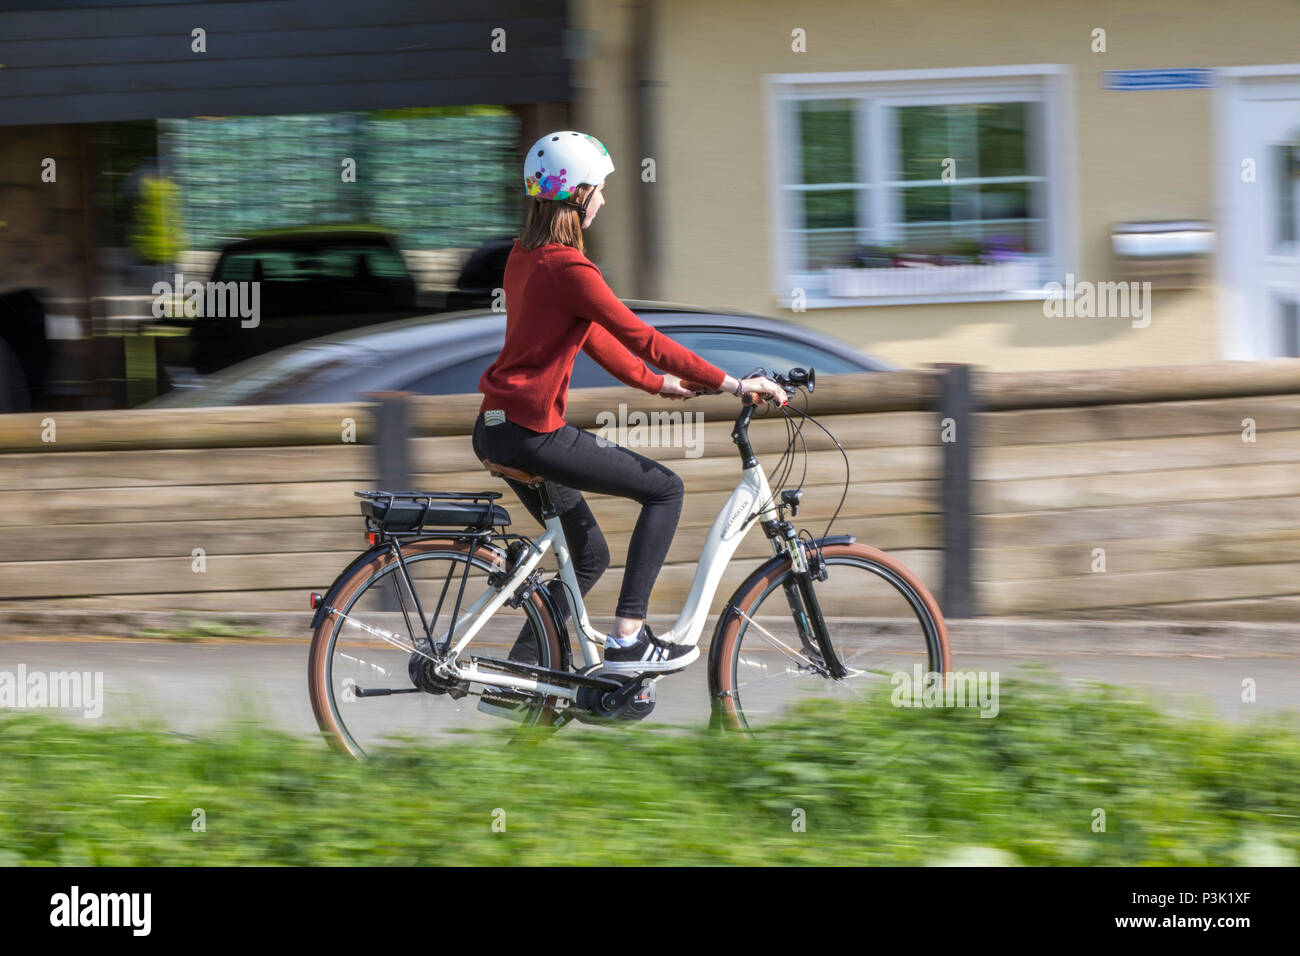 Jeune femme rides un e-bike, vélo électrique, moteur électrique aide à la conduite, Banque D'Images